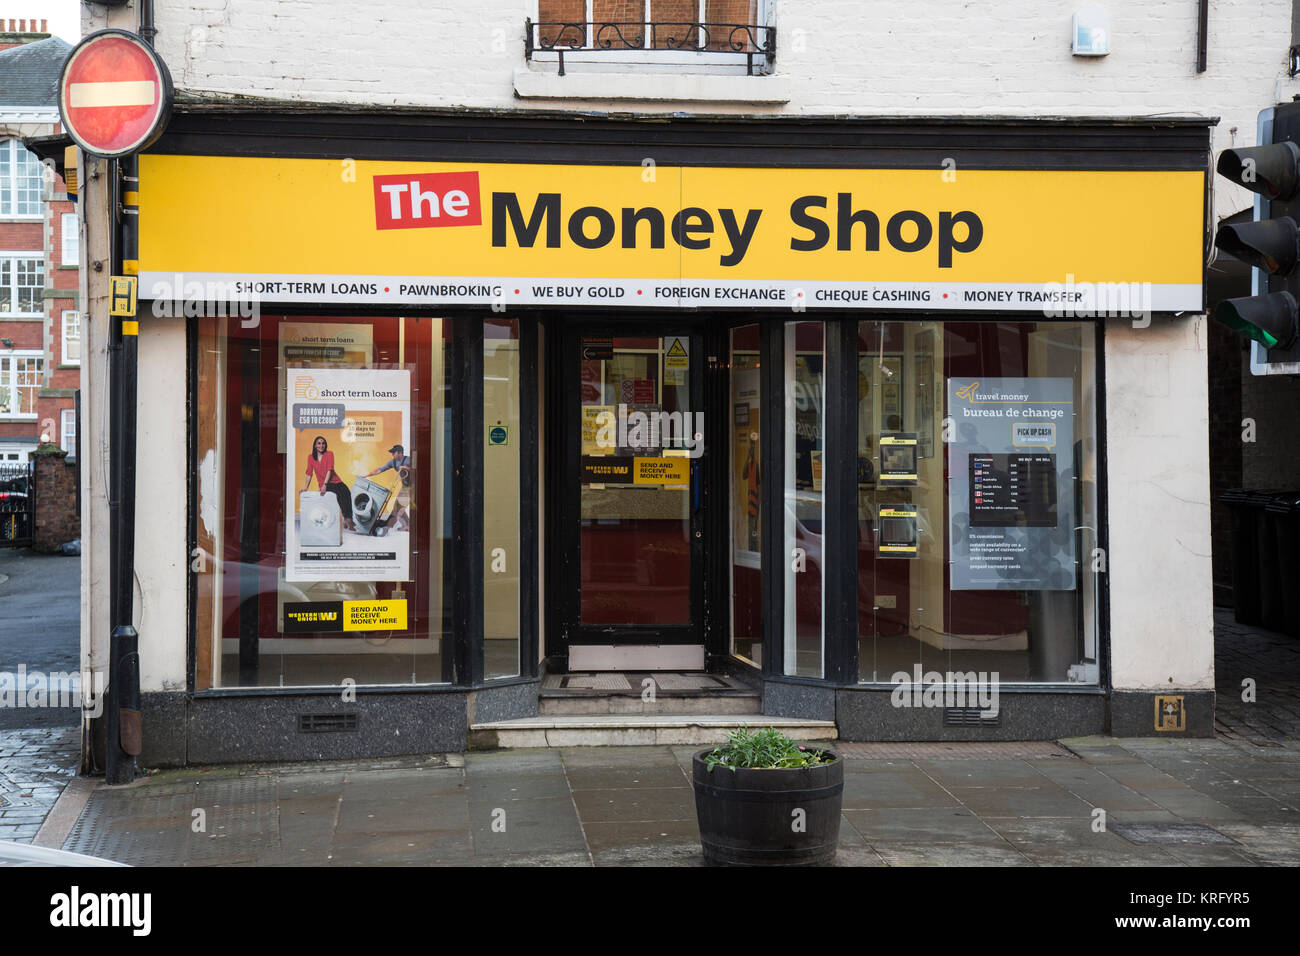 La boutique de l'argent à Shrewsbury, en Angleterre. Prêts à court terme, les prêteurs sur gages, les acheteurs d'or, devises, encaissement de chèques, des transferts d'argent. Banque D'Images